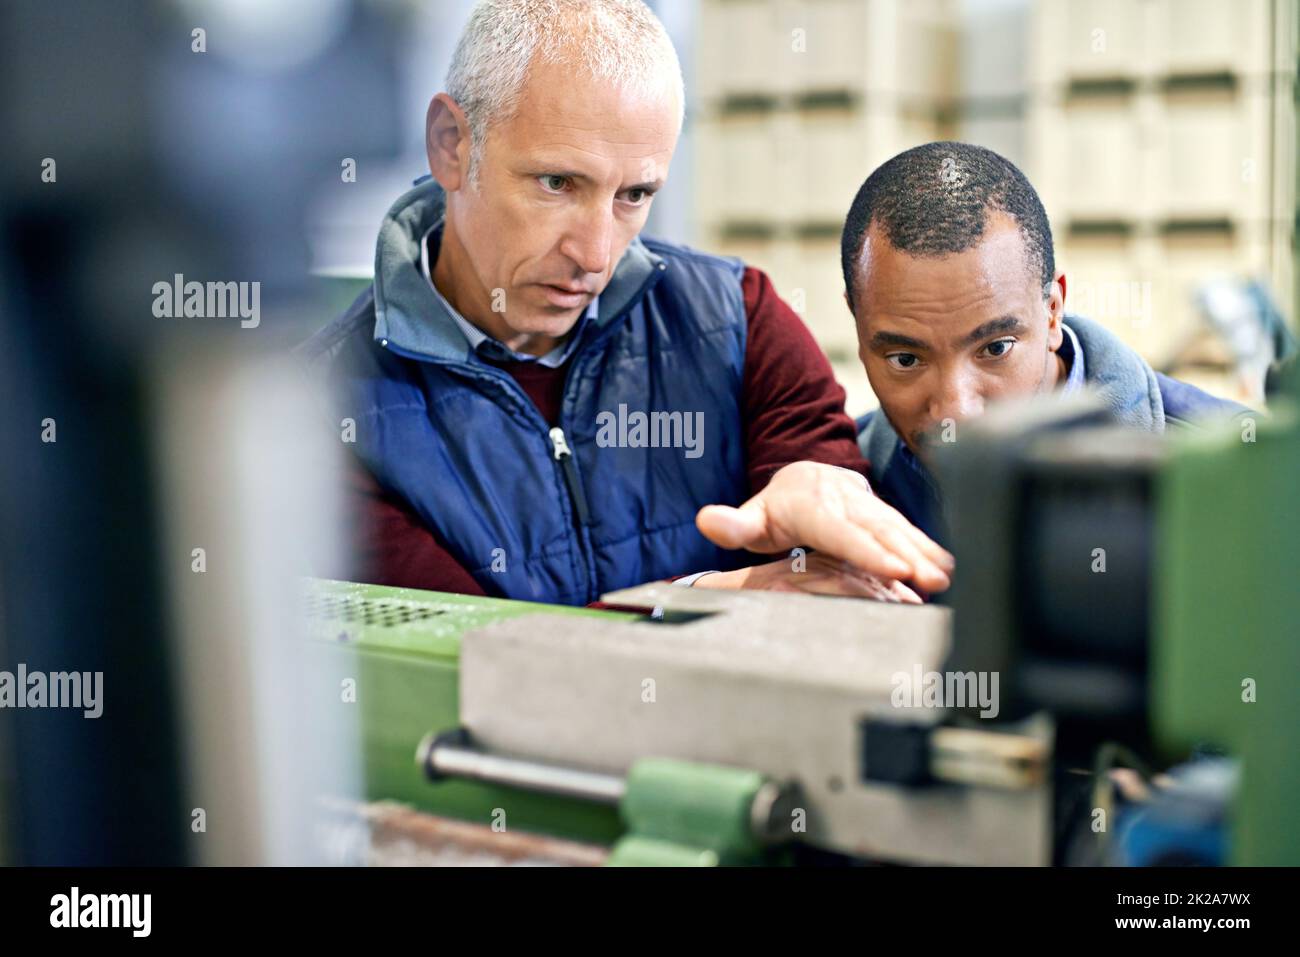 Étaient aussi bons que notre équipement. Photo de deux hommes travaillant sur des machines d'usine. Banque D'Images